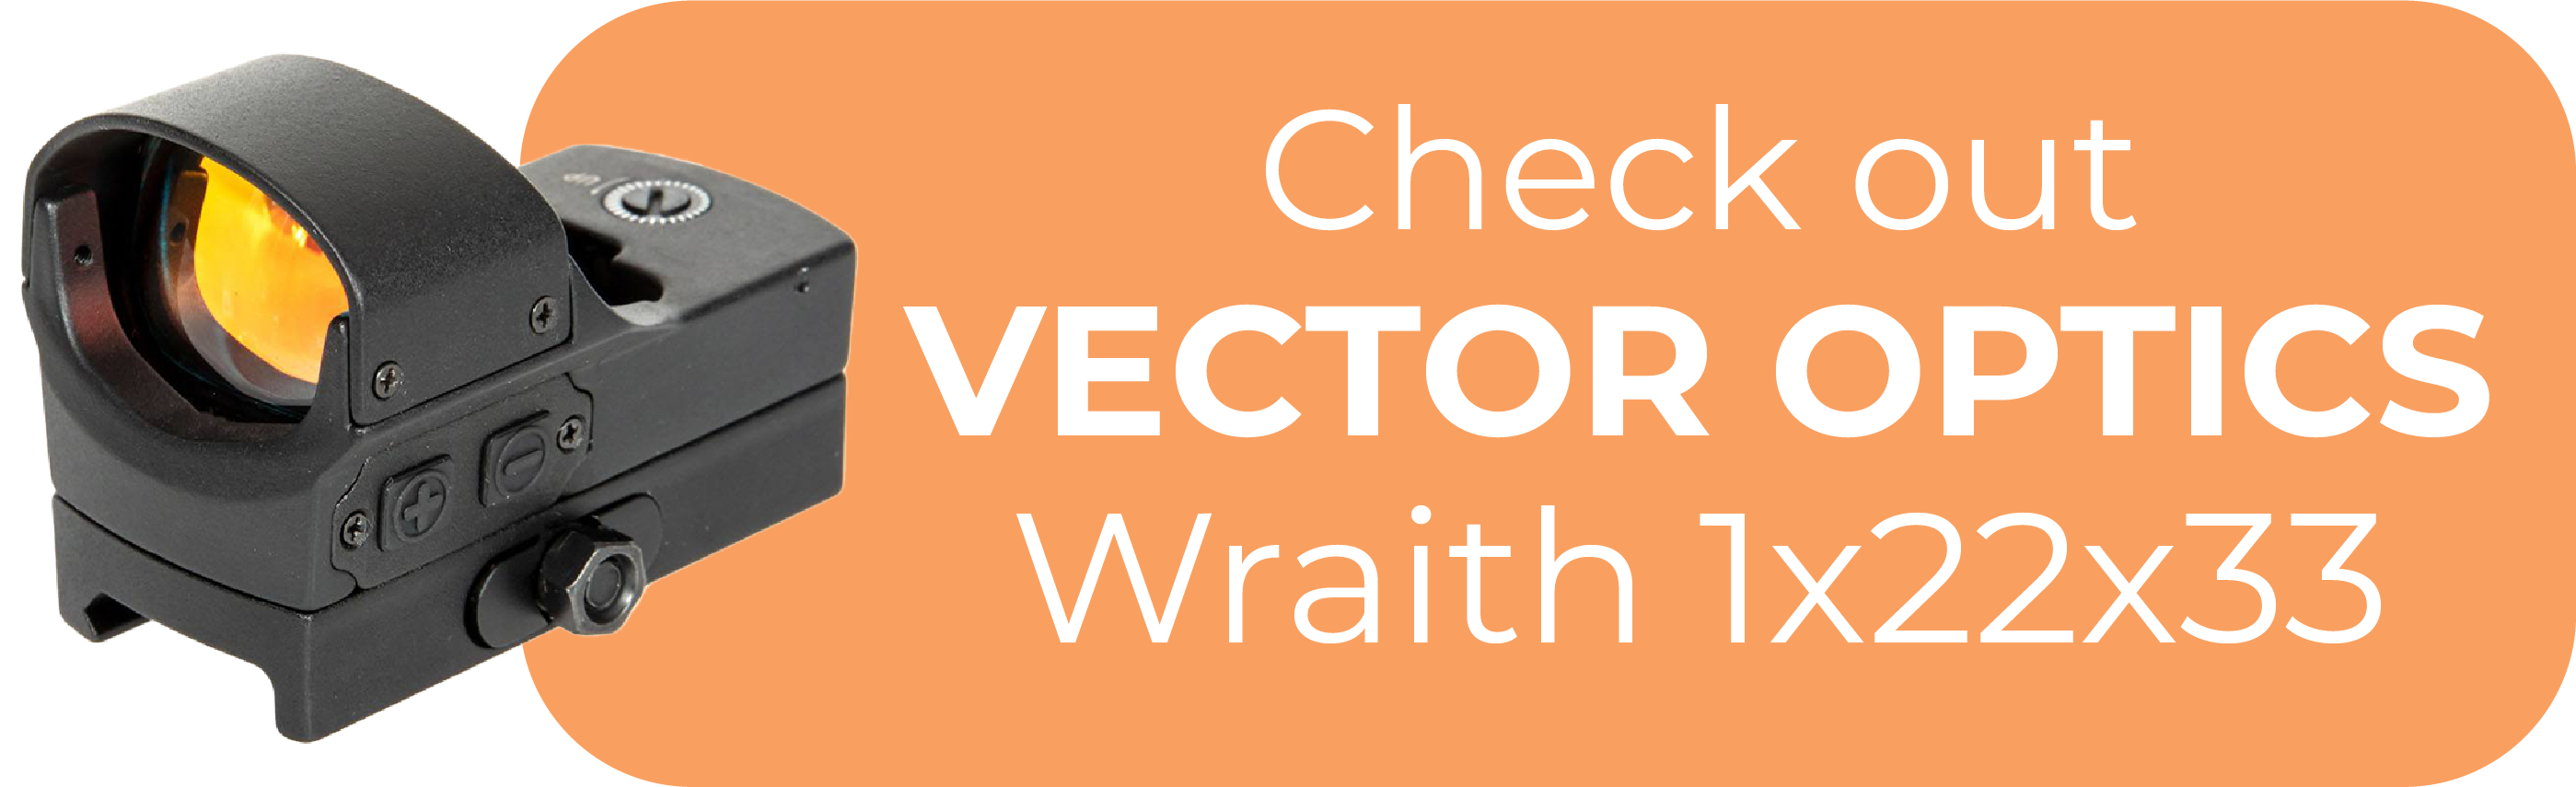 Vector Optics Wraith 1x22x33 Footprint